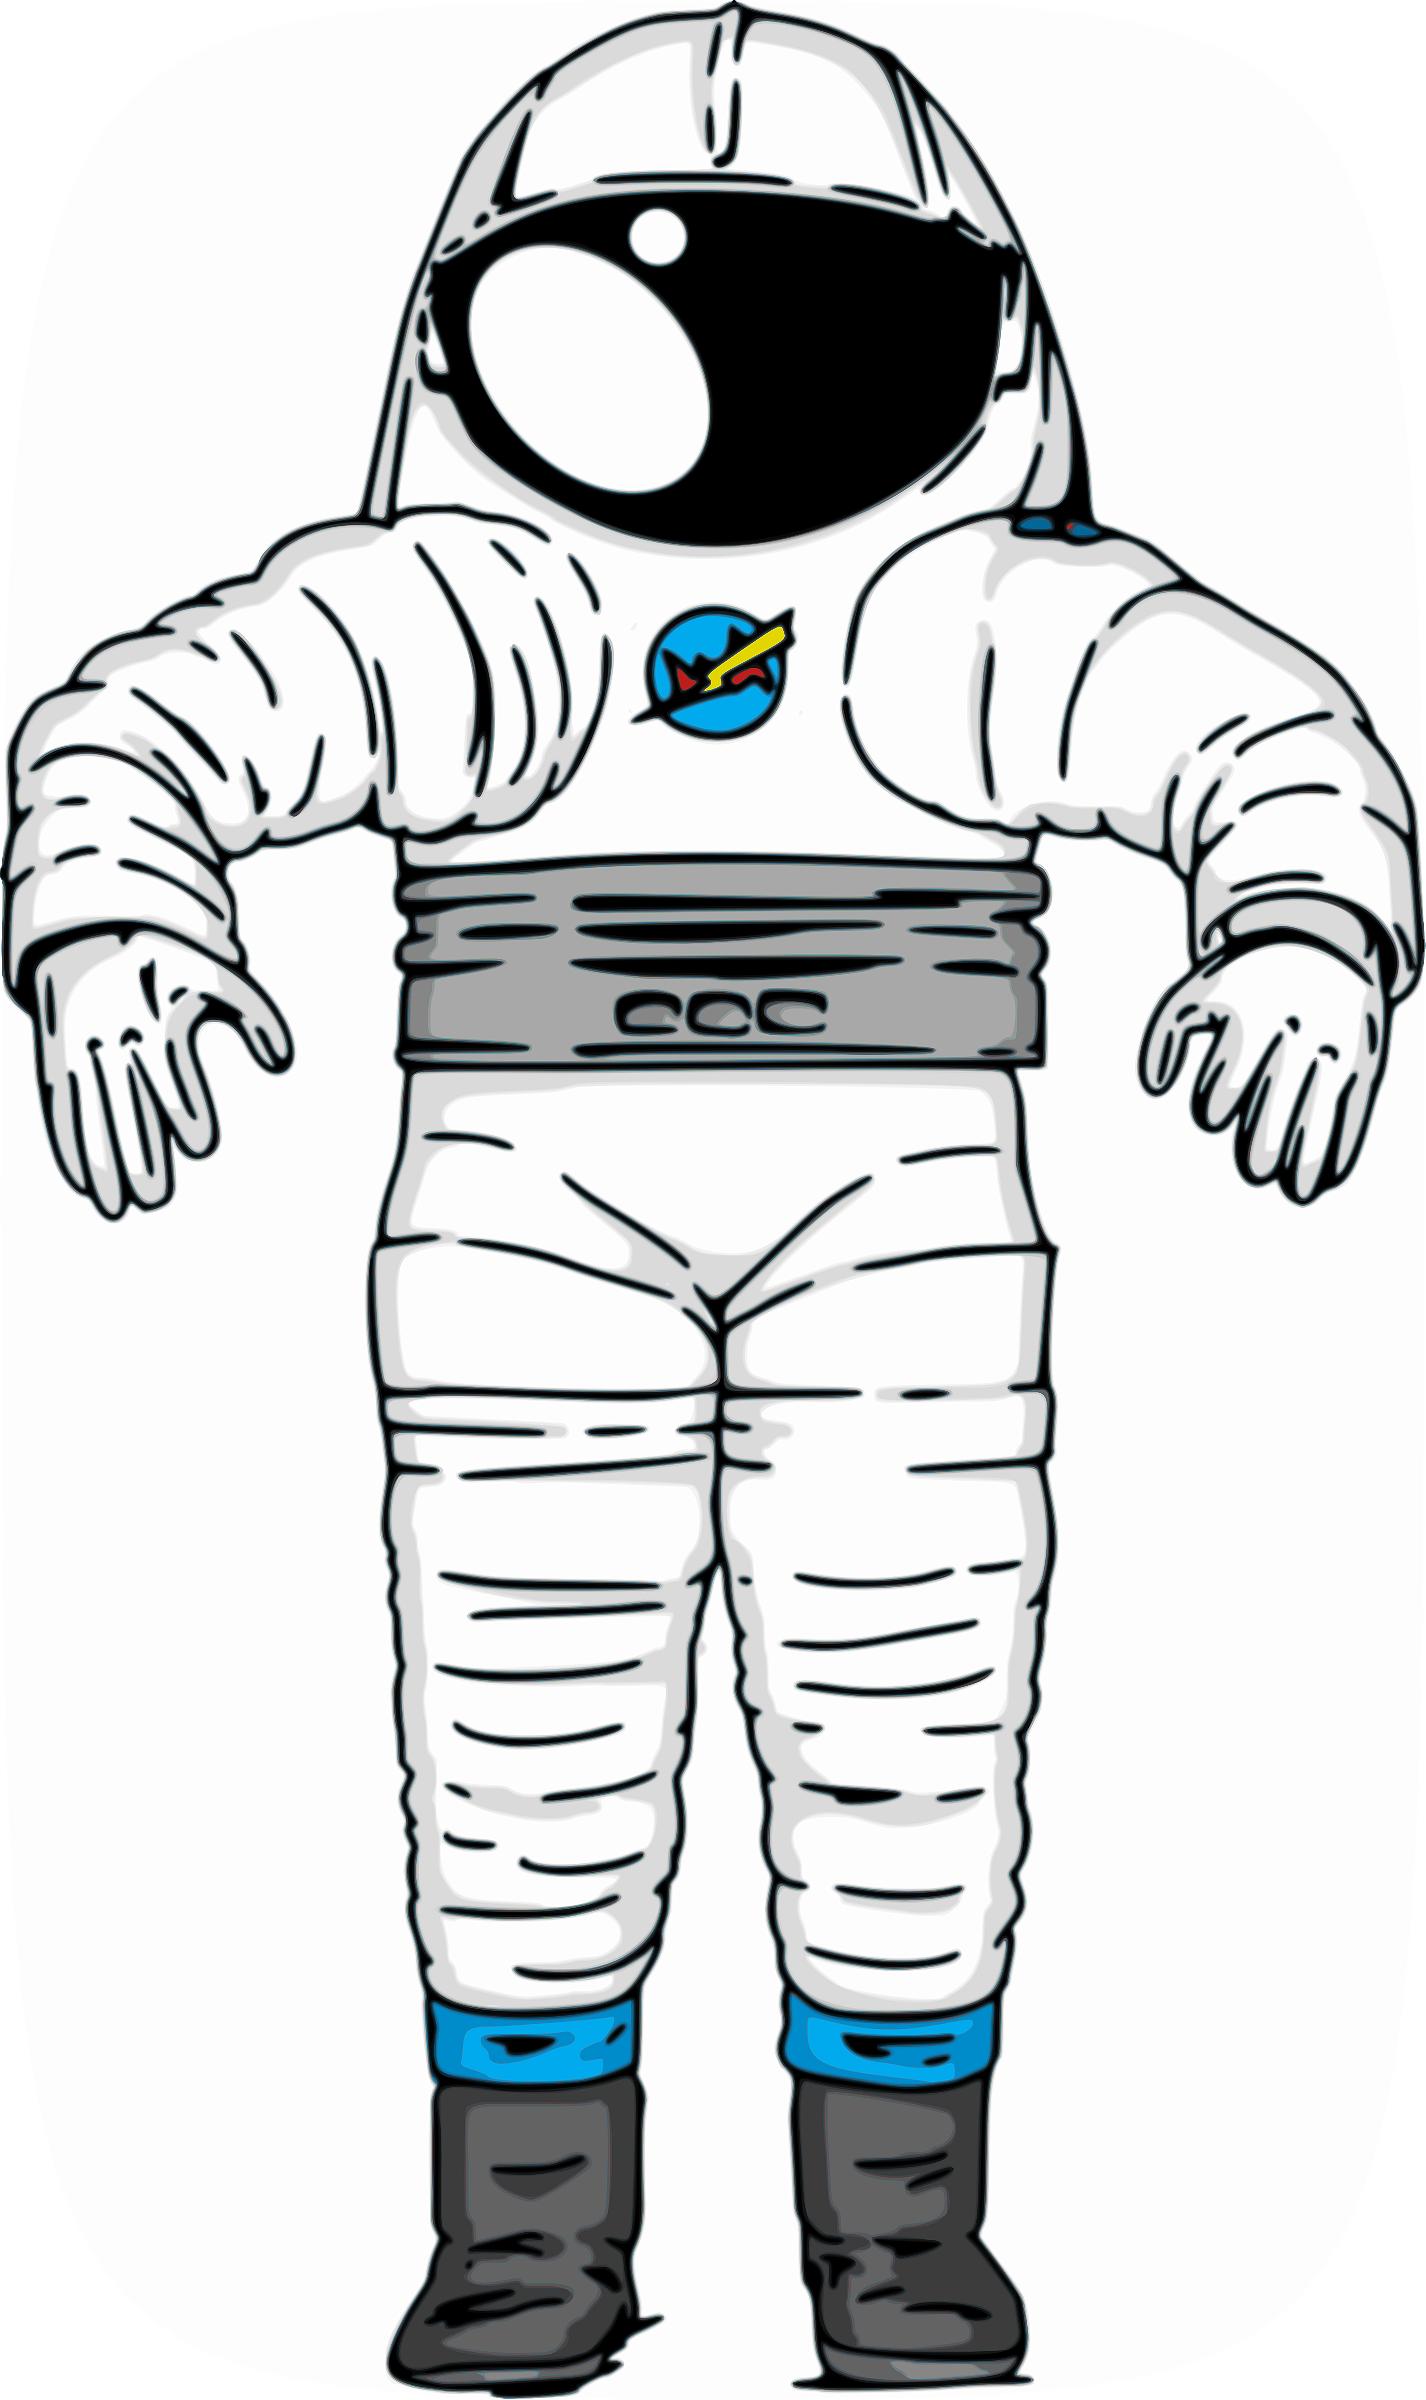 NASA Mark III Astronaut Space Suit png